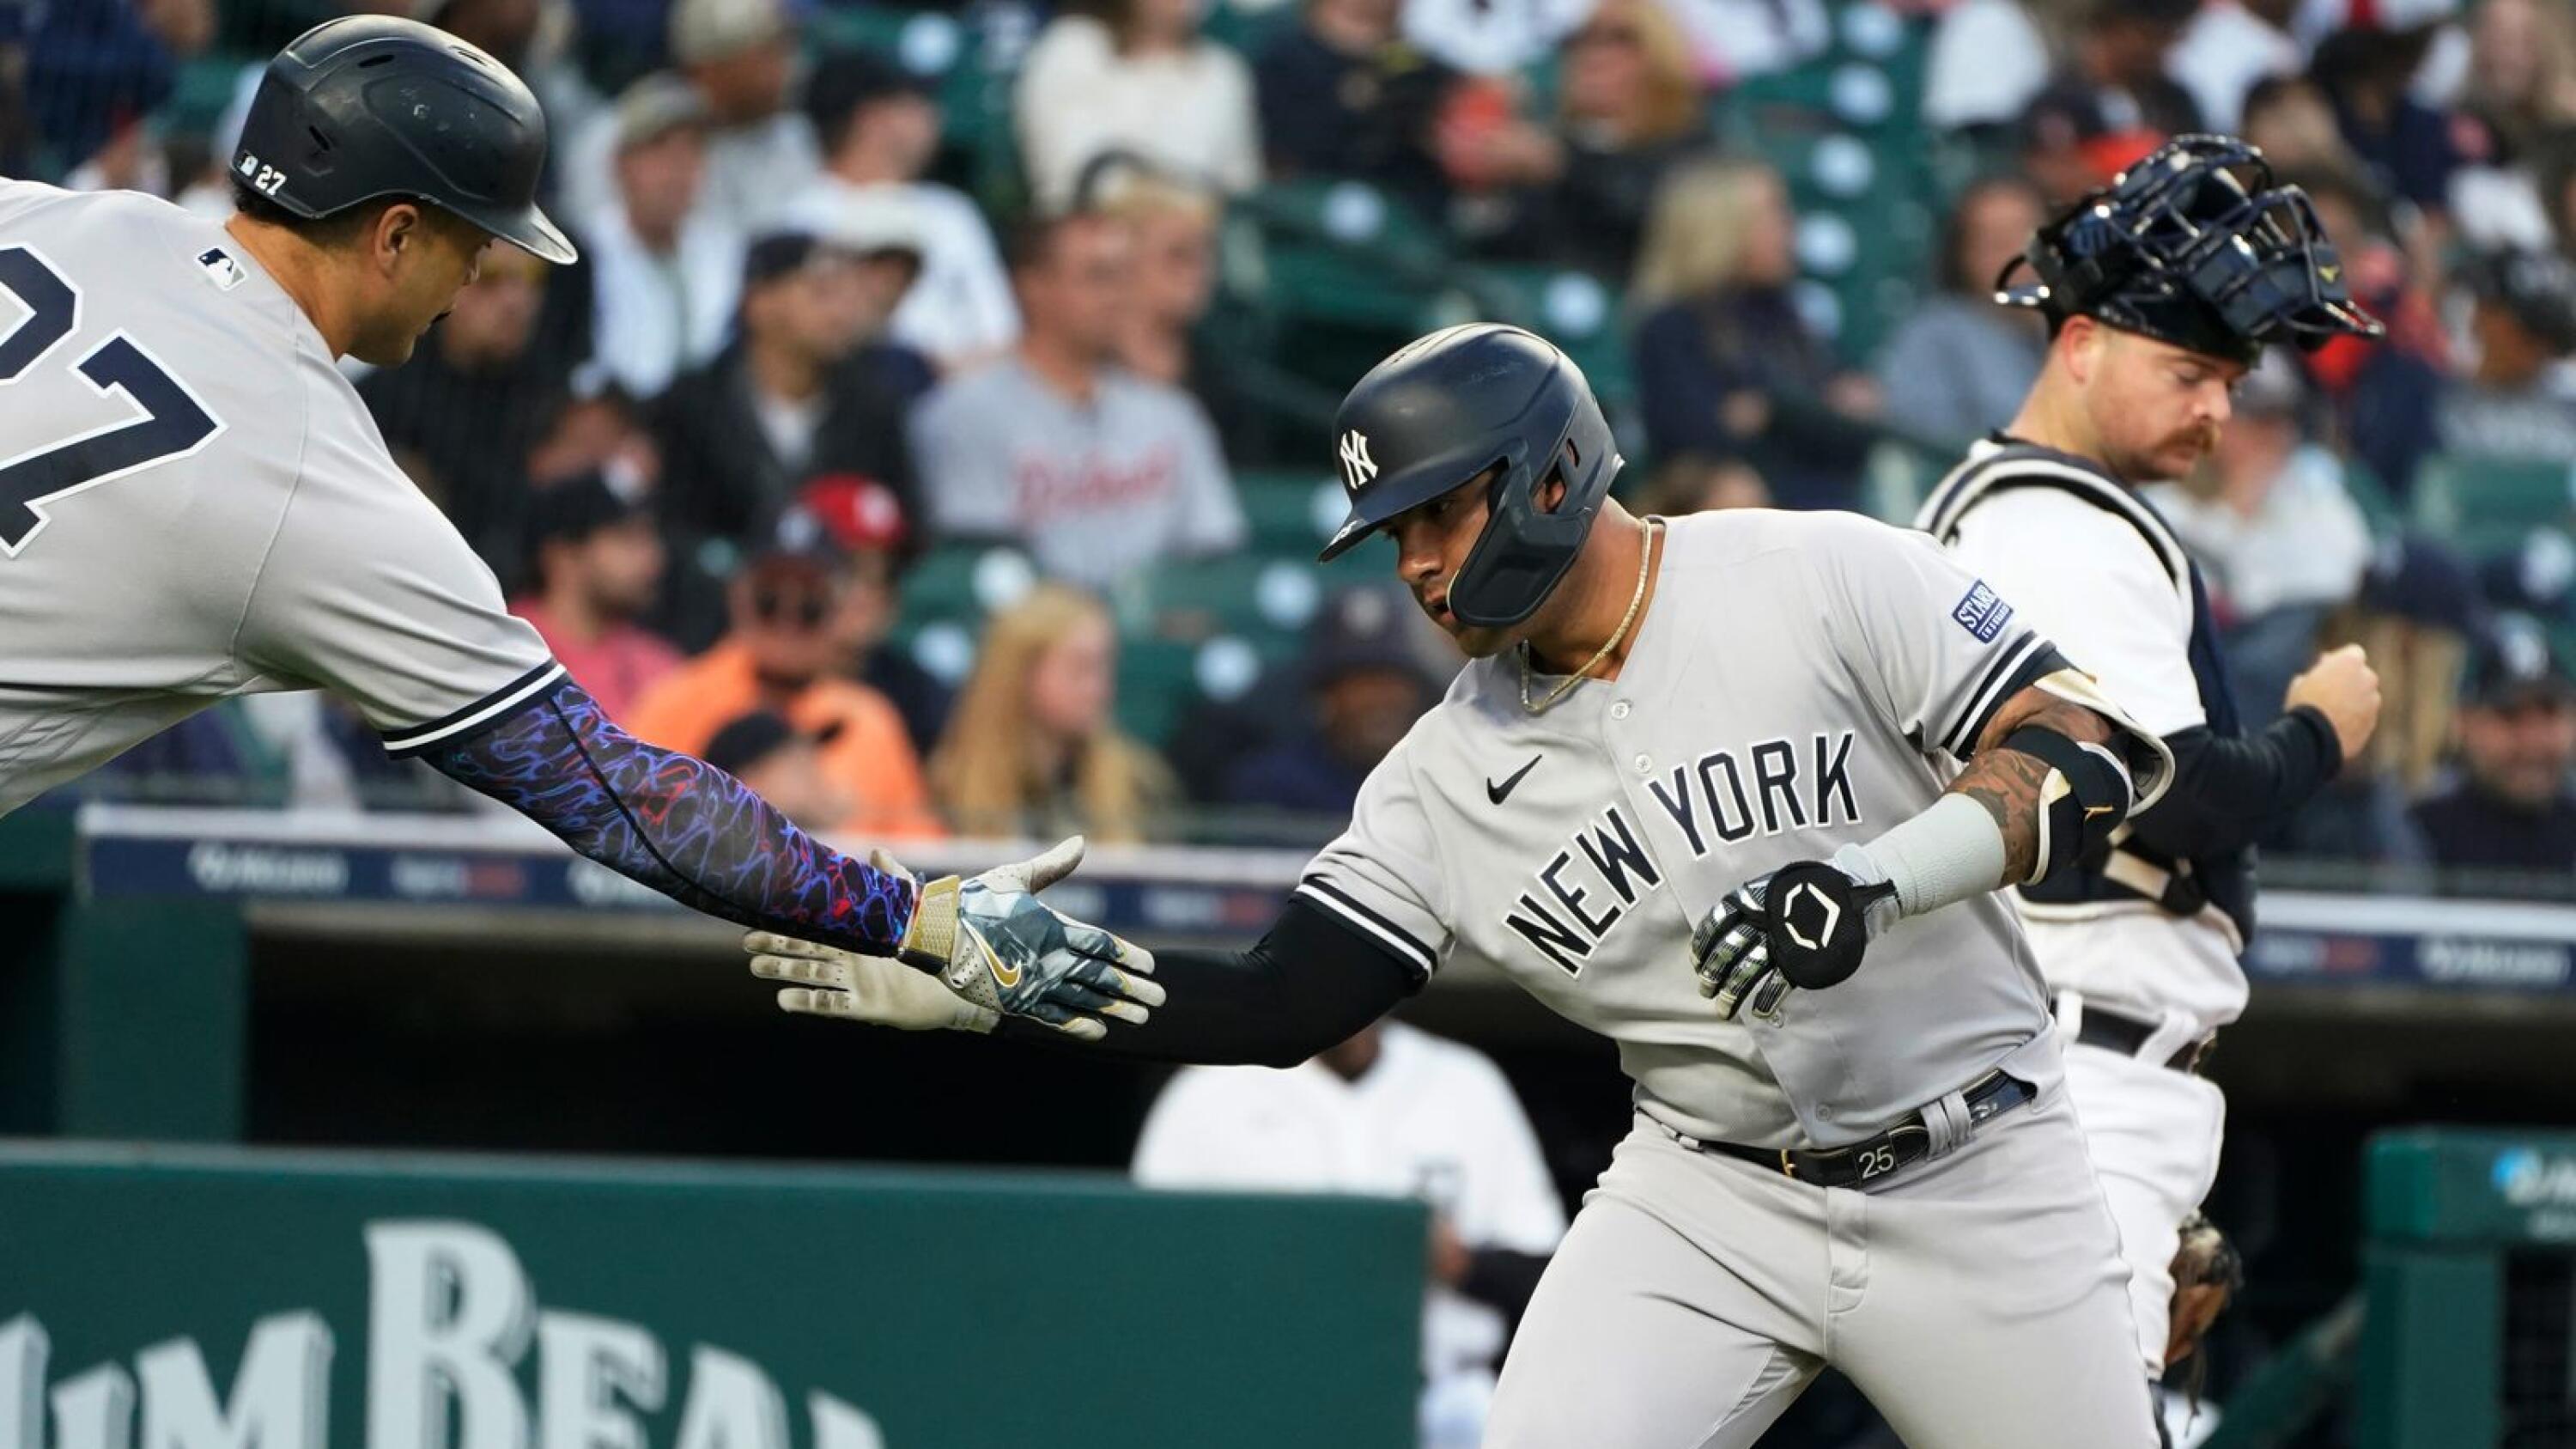 Yankees end 10-series winless streak, beat Tigers 6-2 behind Cole